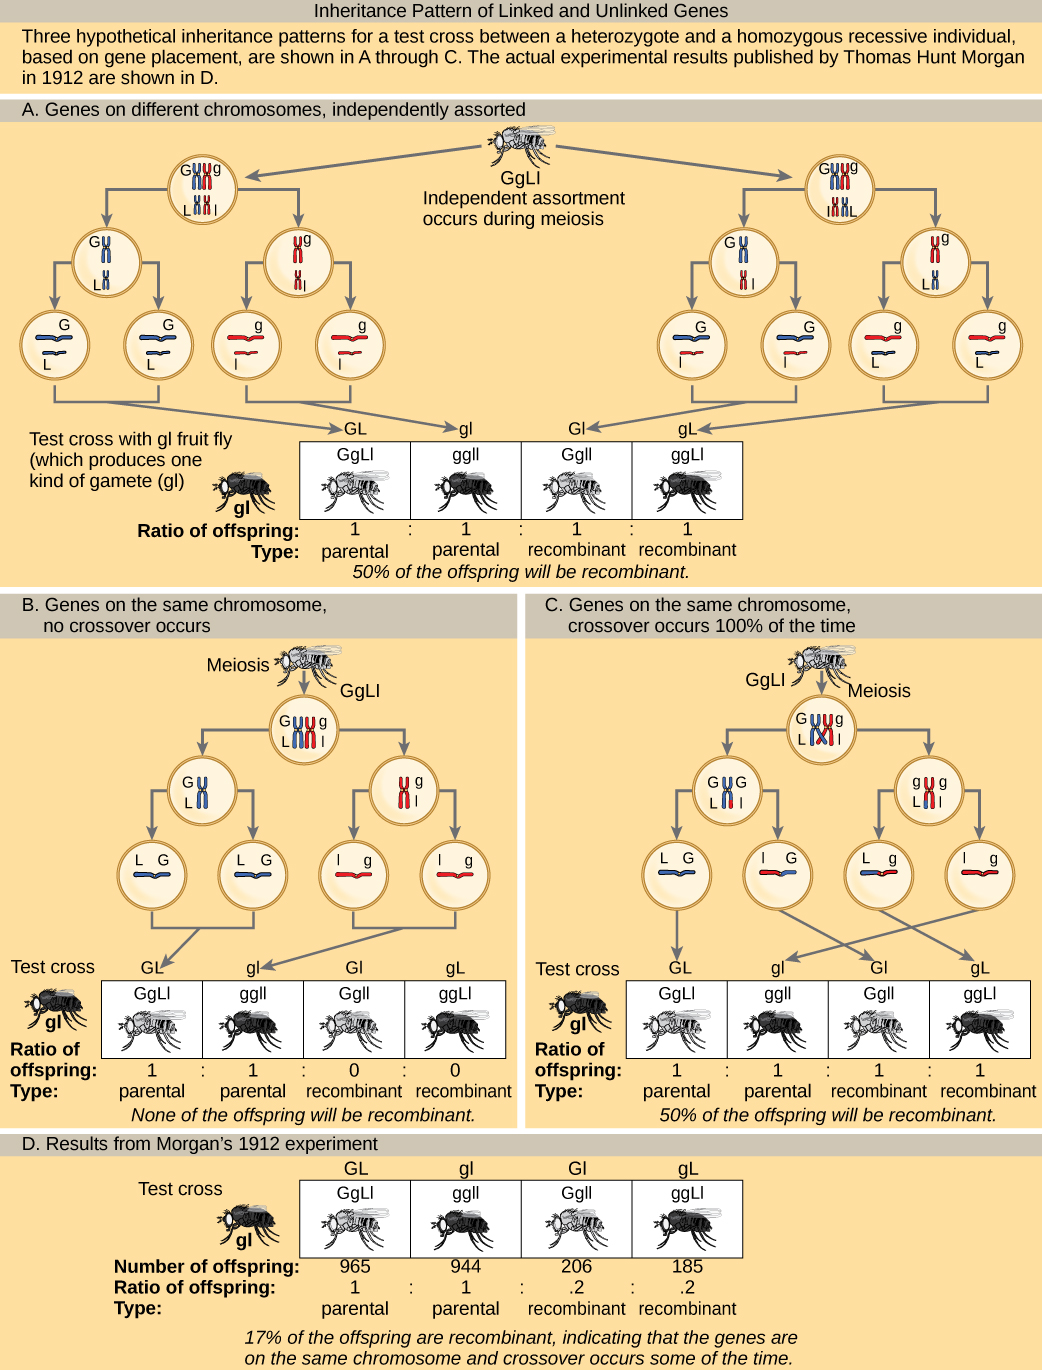 L'illustration montre les modèles héréditaires possibles de gènes liés et non liés. L'exemple utilisé inclut la couleur corporelle et la longueur des ailes de la mouche des fruits. Les mouches des fruits peuvent avoir une couleur grise dominante (G) ou une couleur noire récessive (g). Ils peuvent avoir des ailes longues dominantes (L) ou des ailes courtes récessives (l). Trois modèles d'hérédité hypothétiques pour un croisement expérimental entre une mouche des fruits hétérozygote et une mouche des fruits récessive sont présentés, sur la base du placement génétique. Les résultats expérimentaux réels publiés par Thomas Hunt Morgan en 1912 sont également présentés. Dans le premier schéma héréditaire hypothétique de la partie a, les gènes des deux caractéristiques se trouvent sur des chromosomes différents. Un assortiment indépendant se produit de telle sorte que le ratio de génotypes chez la progéniture est de 1 gGLL:1 ggll:1 ggl:1 ggL, et 50 % des descendants sont des types non parentaux. Dans le deuxième schéma héréditaire hypothétique de la partie b, les gènes sont proches les uns des autres sur le même chromosome, de sorte qu'aucun croisement ne se produit entre eux. Le rapport des génotypes est de 1 ggL:1 ggll, et aucun des descendants n'est recombinant. Dans le troisième schéma d'hérédité hypothétique de la partie c, les gènes sont très éloignés les uns des autres sur le même chromosome, de sorte que le croisement se produit 100 % du temps. Le ratio de génotypes est le même que pour les gènes de deux chromosomes différents, et 50 % des descendants sont des types recombinants non parentaux. La partie d montre que le nombre de descendants que Thomas Hunt Morgan a réellement observé était de 965 : 944 : 206:185 (gglL:gglL:gglL:gglL). Dix-sept pour cent des descendants étaient recombinants, ce qui indique que les gènes se trouvent sur le même chromosome et que des croisements se produisent entre eux de temps en temps.